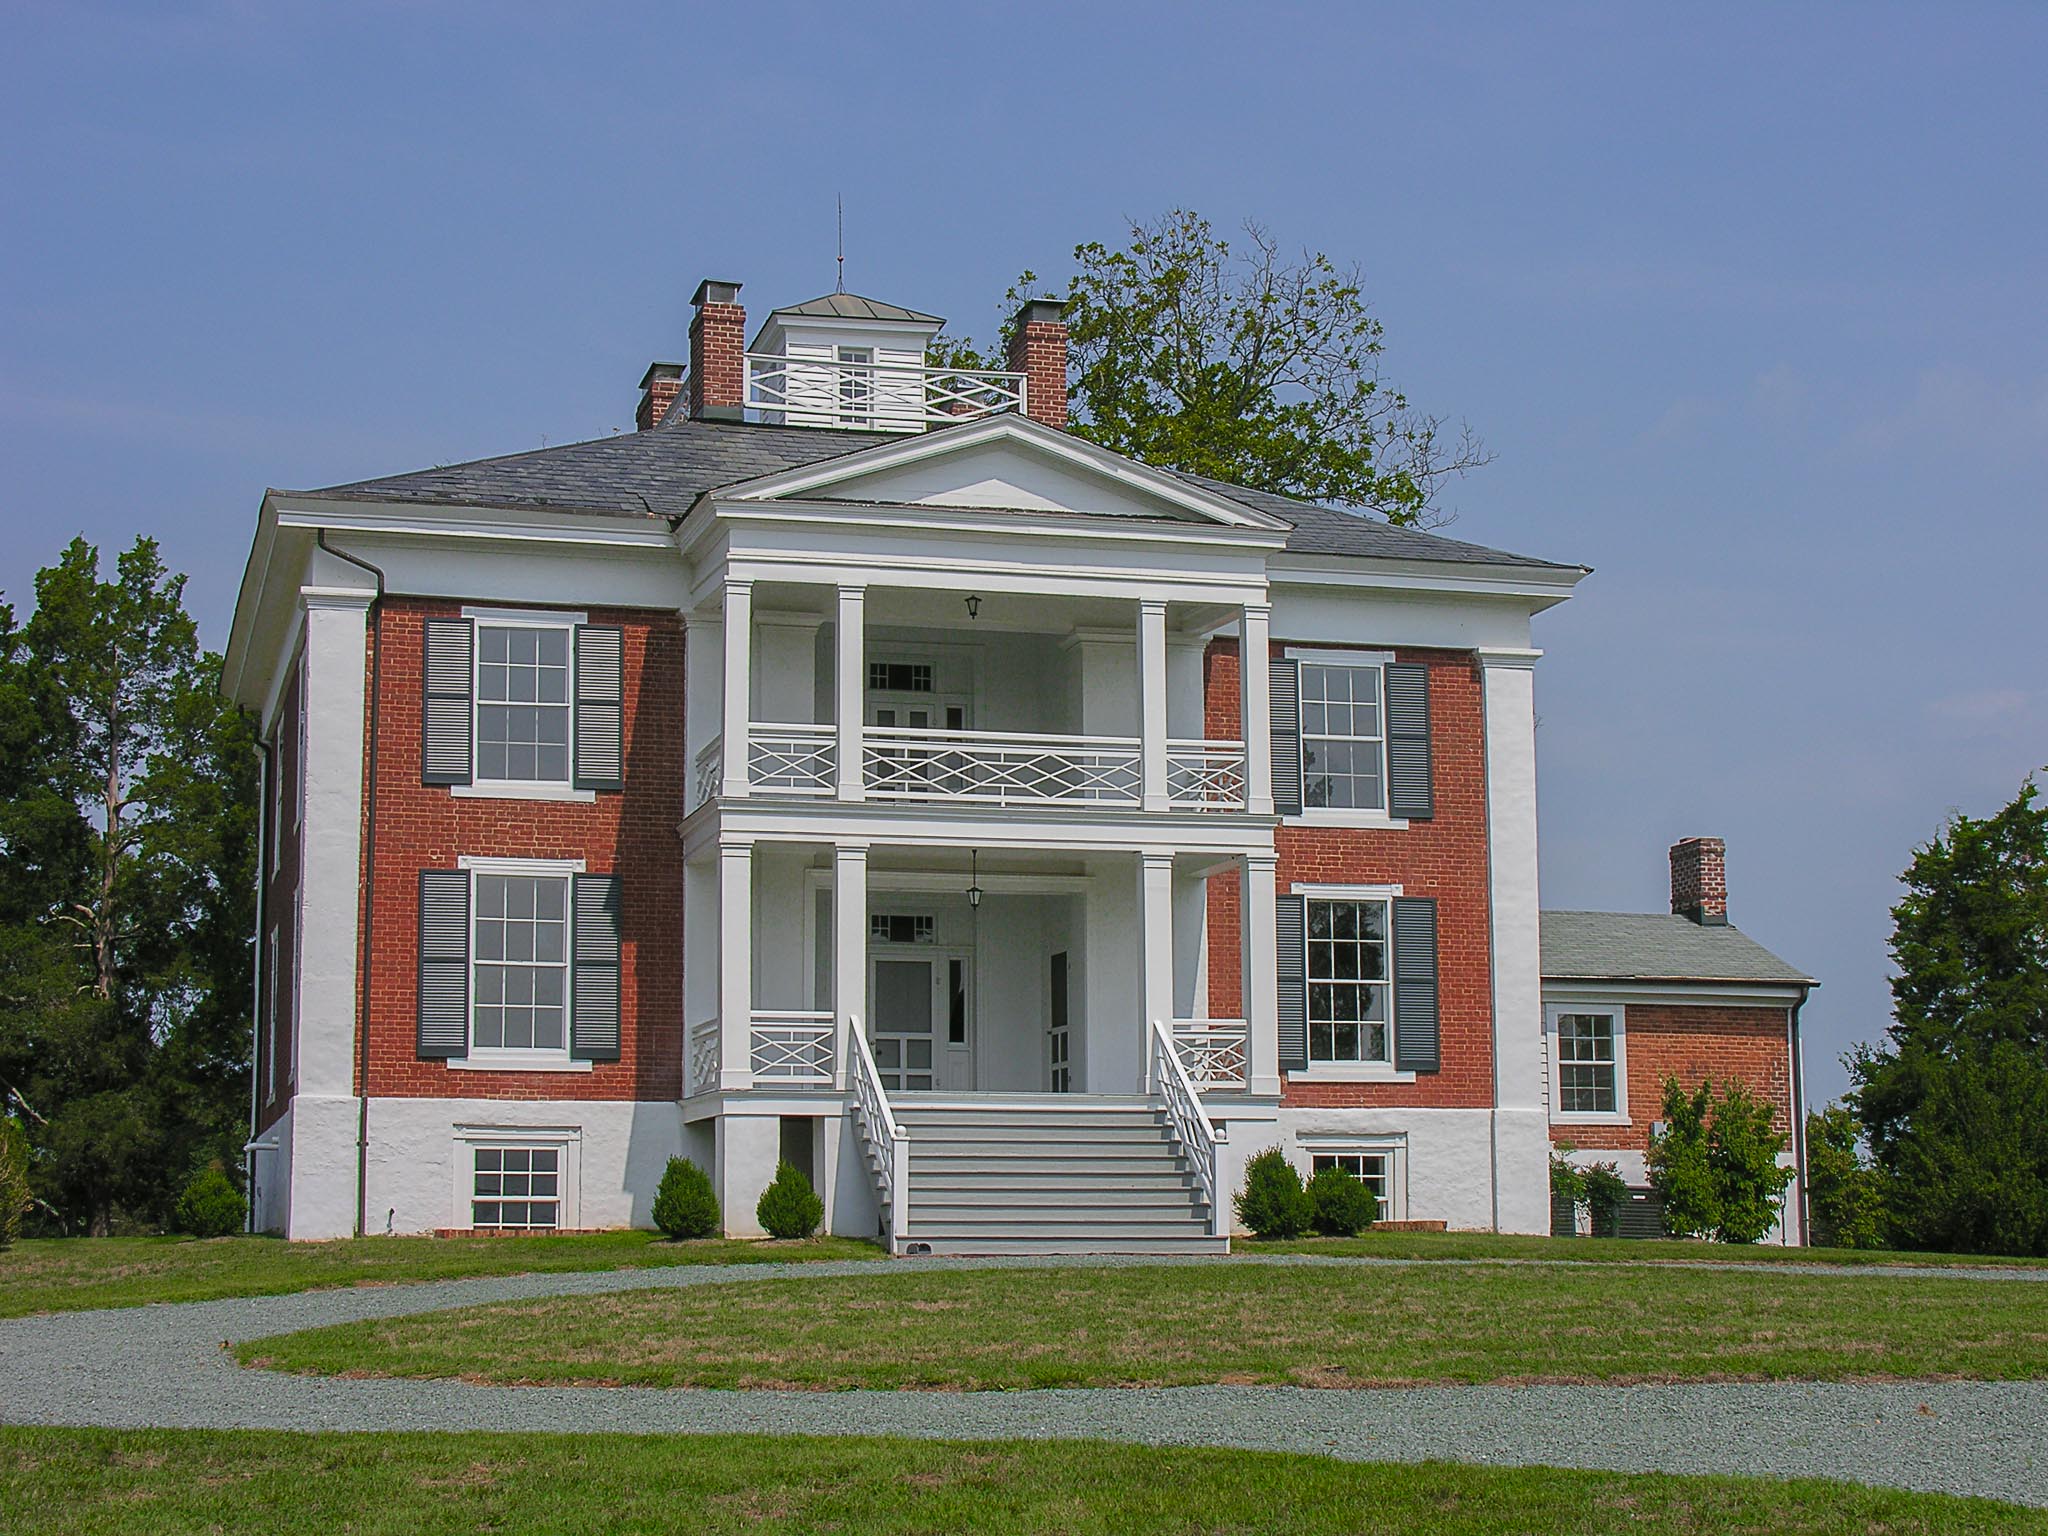 Virginia Estate for Sale, 4336 Monticola Road in Esmont